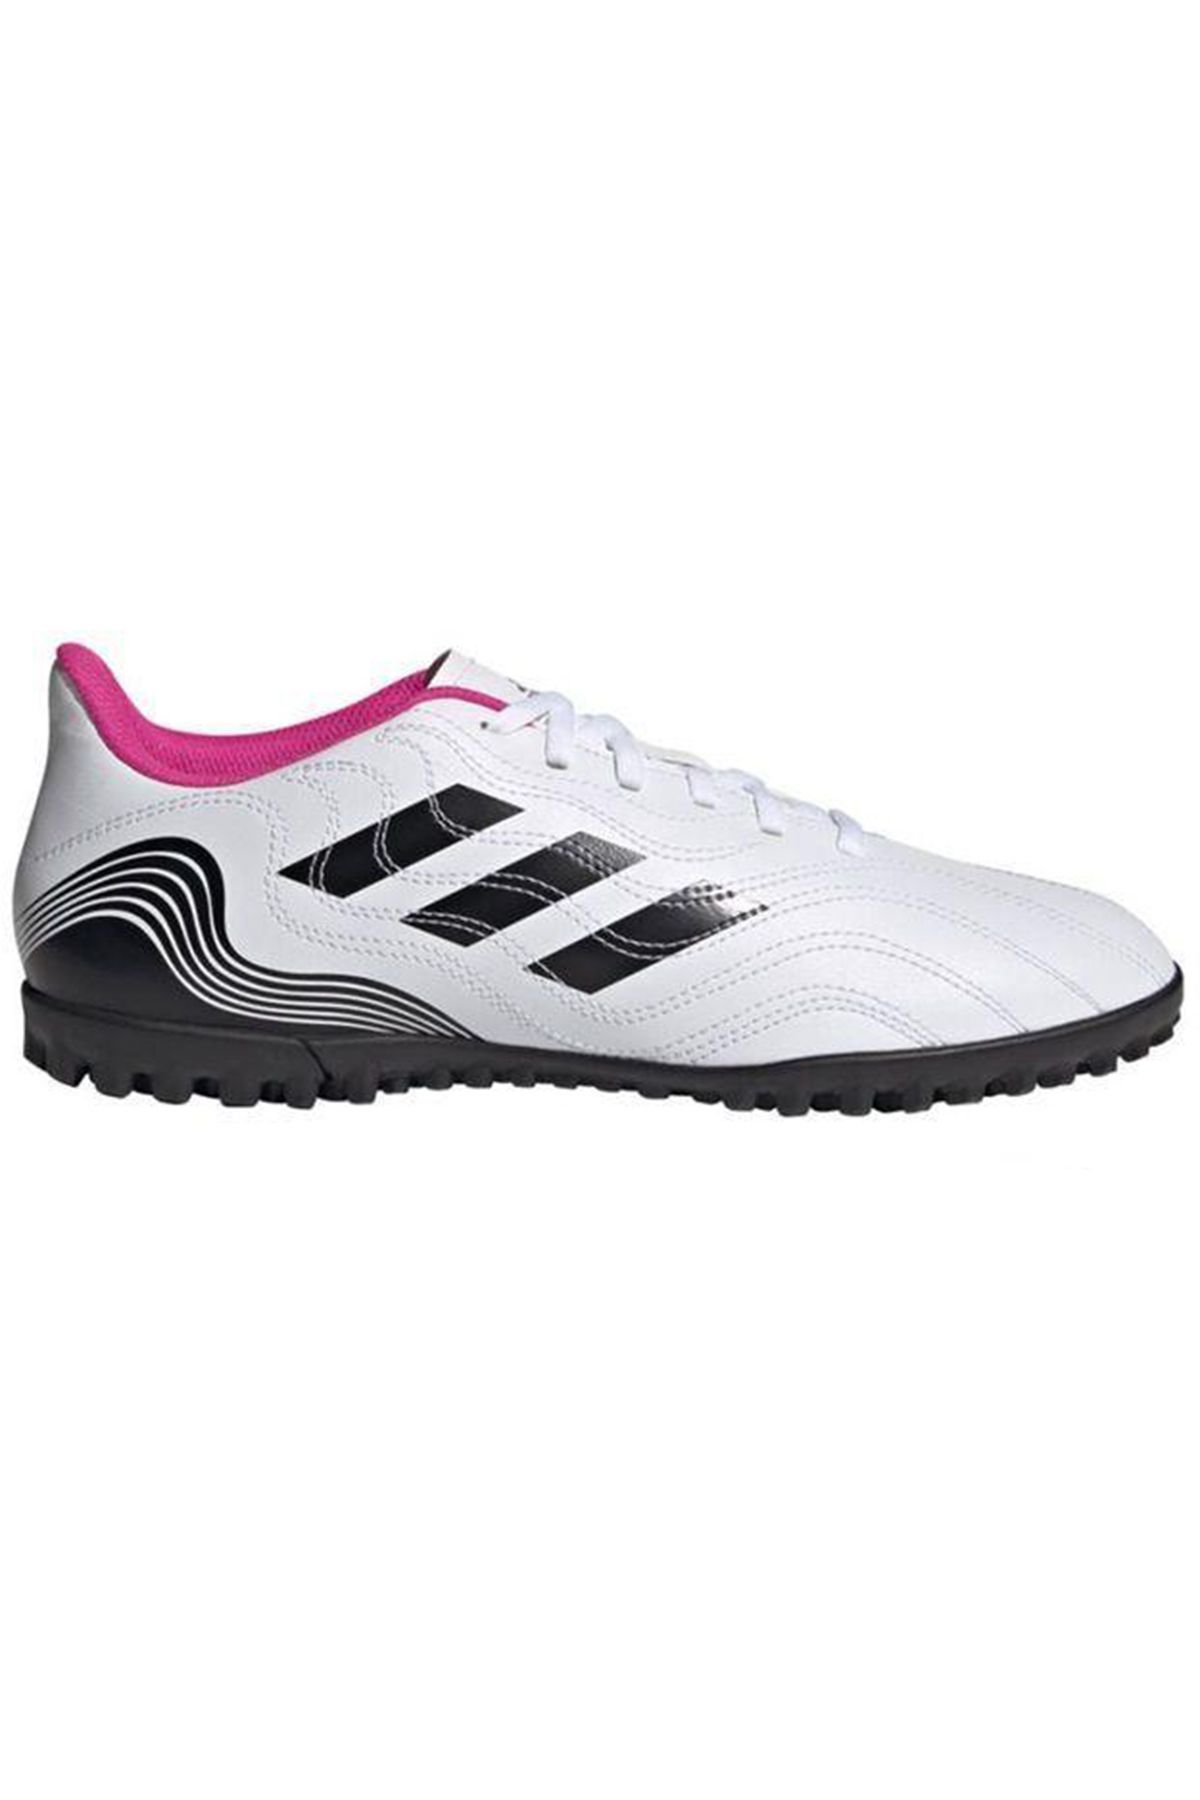 adidas Copa Sense.4 Tf Erkek Beyaz Halı Saha Ayakkabısı Fw6546